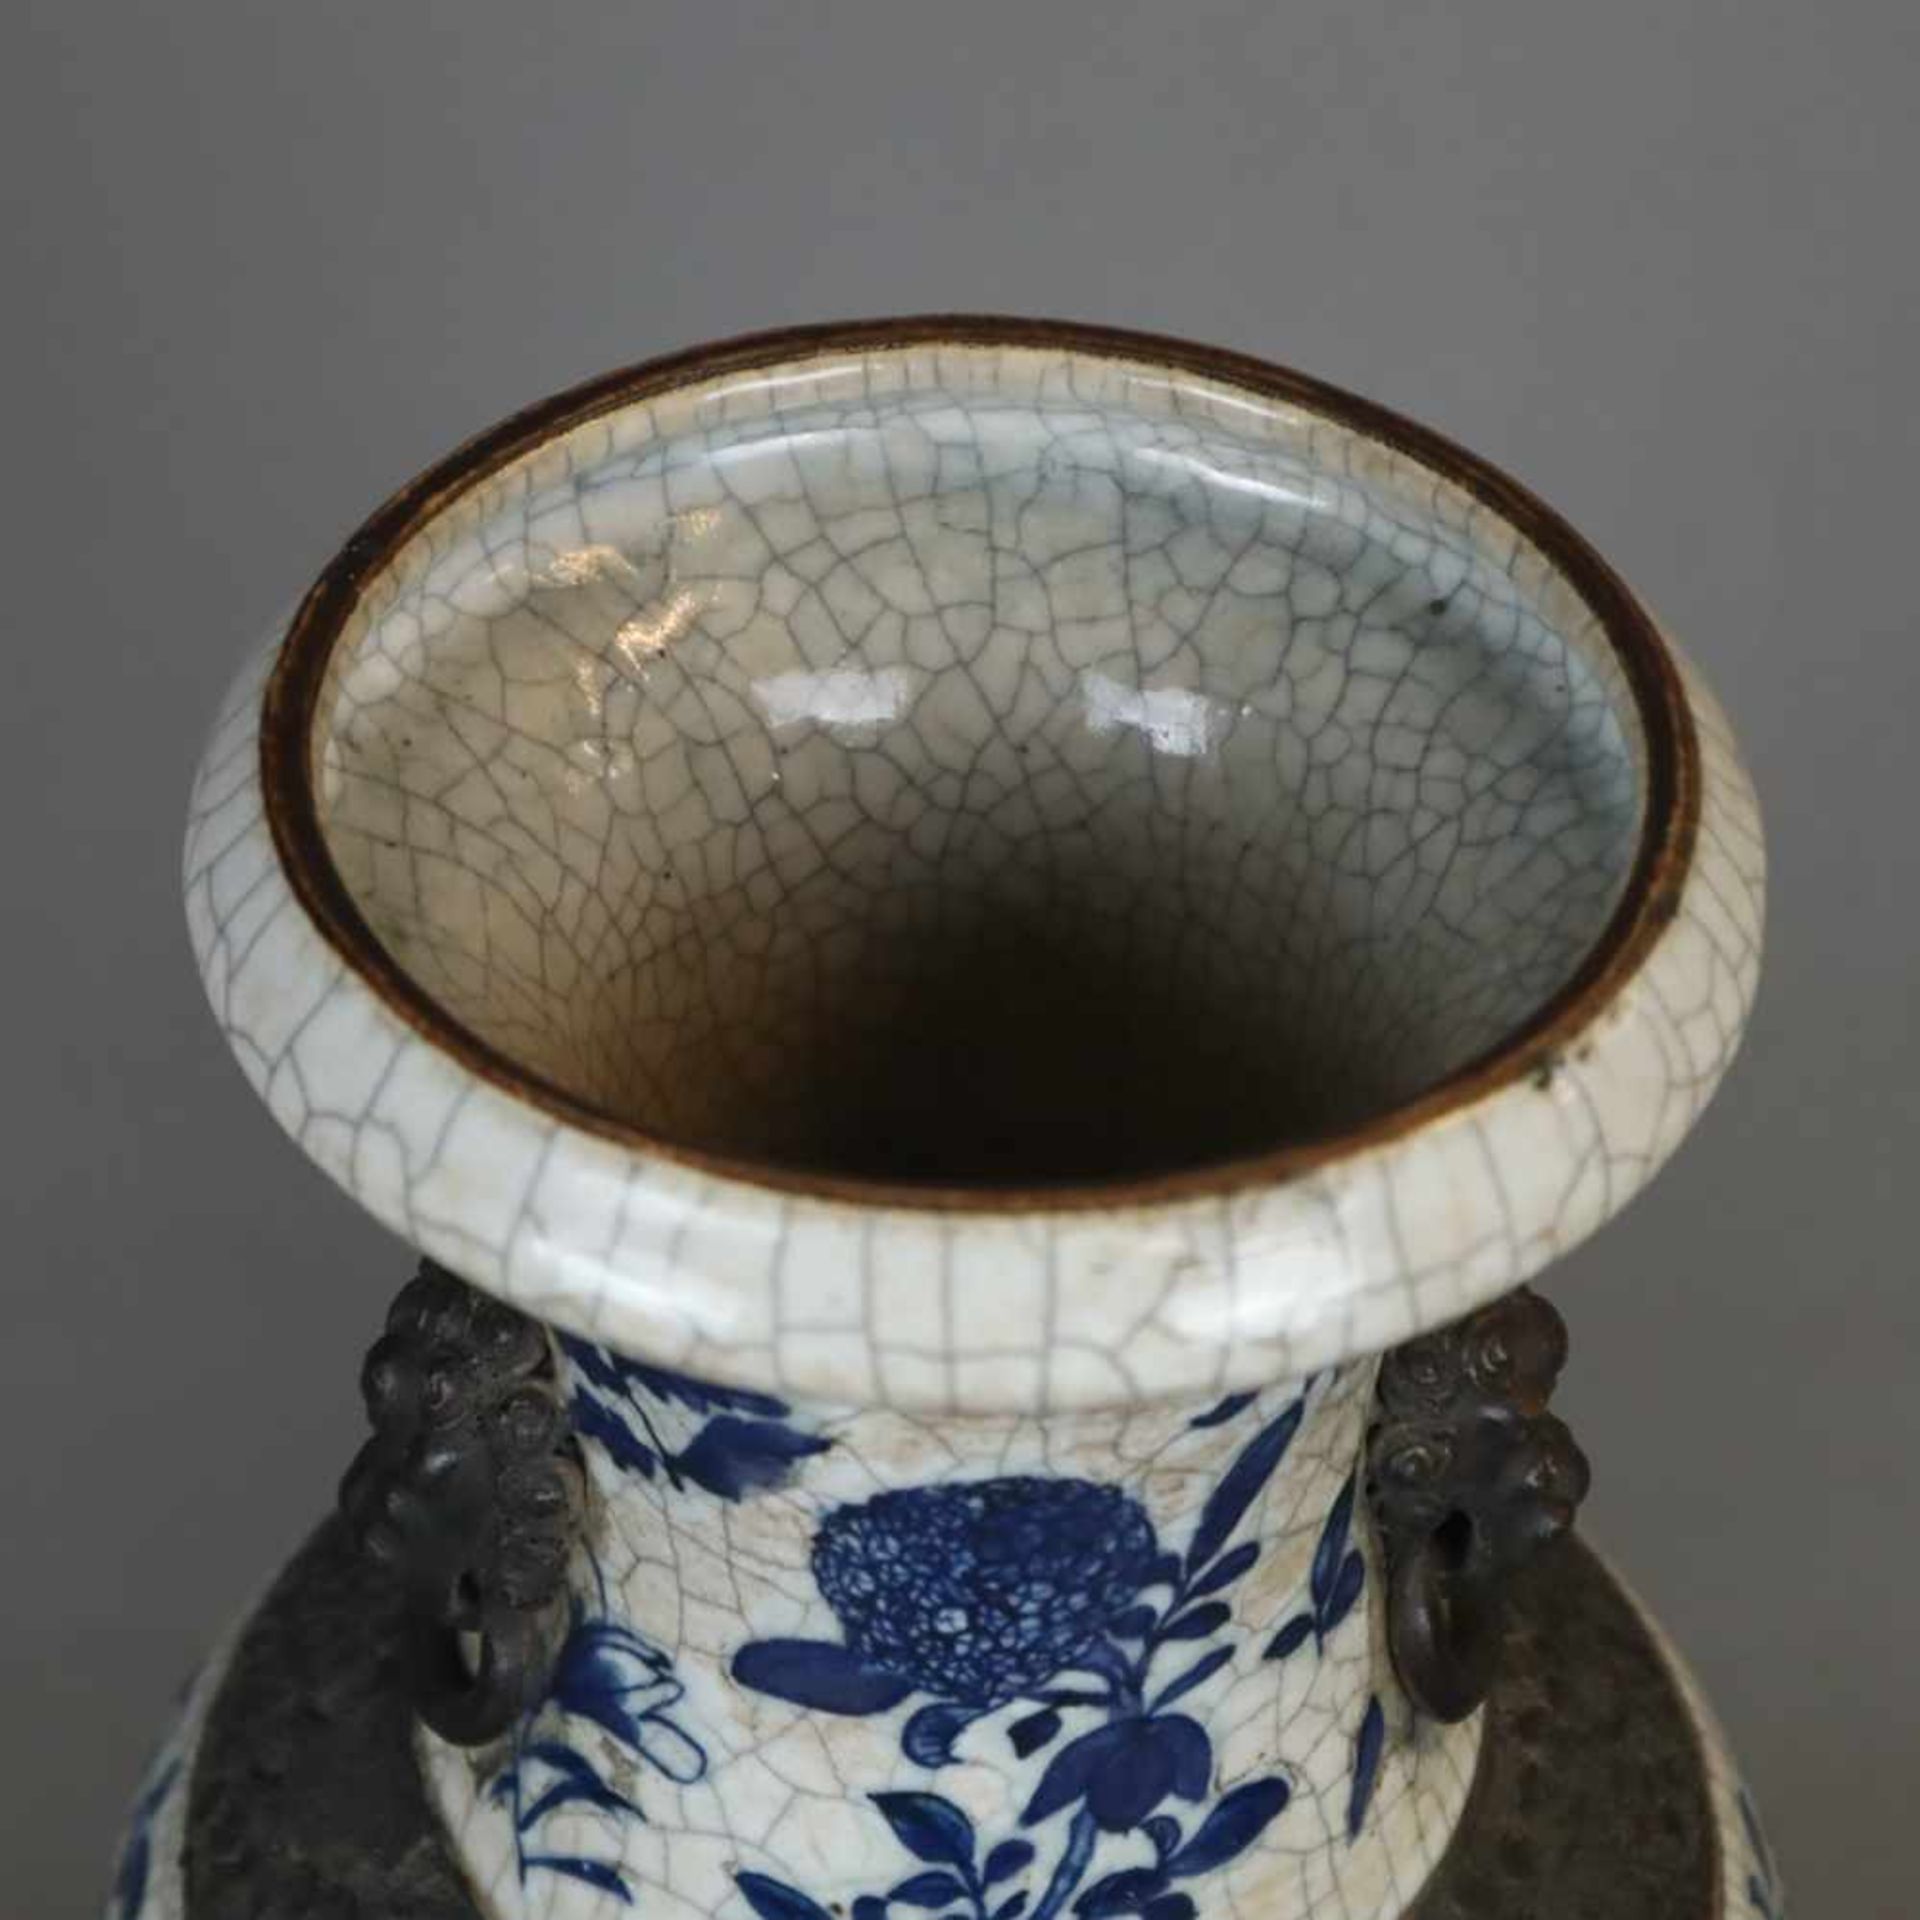 Balustervase - China, feine Handbemalung in Blau mit Drachen- und Blütenmotiven, gräuliche Glasur - Bild 2 aus 10